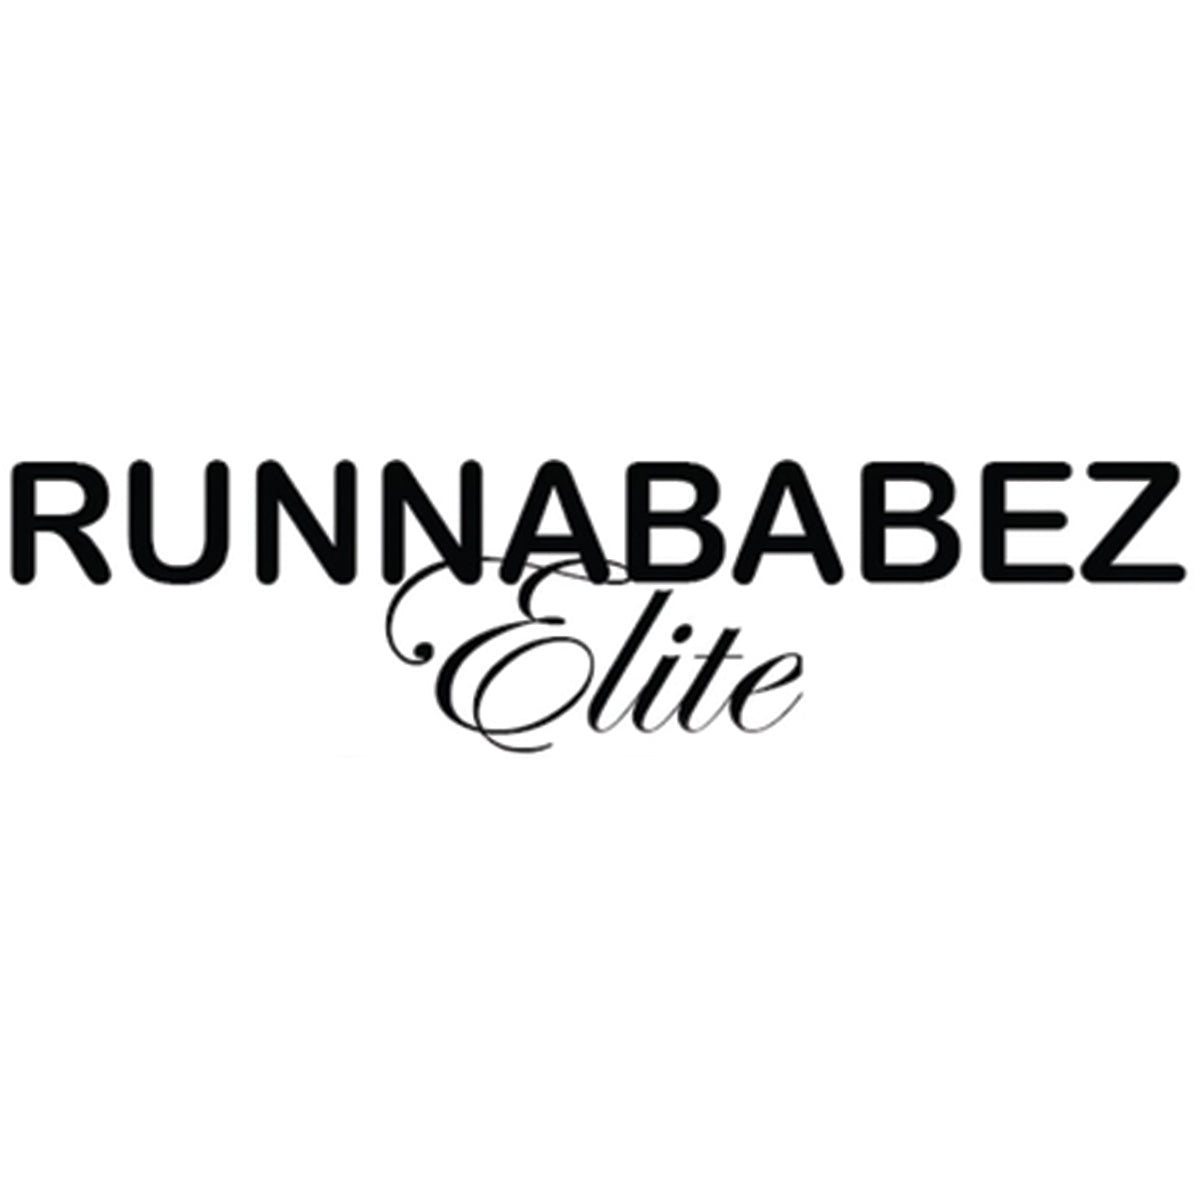 Runnababez Elite